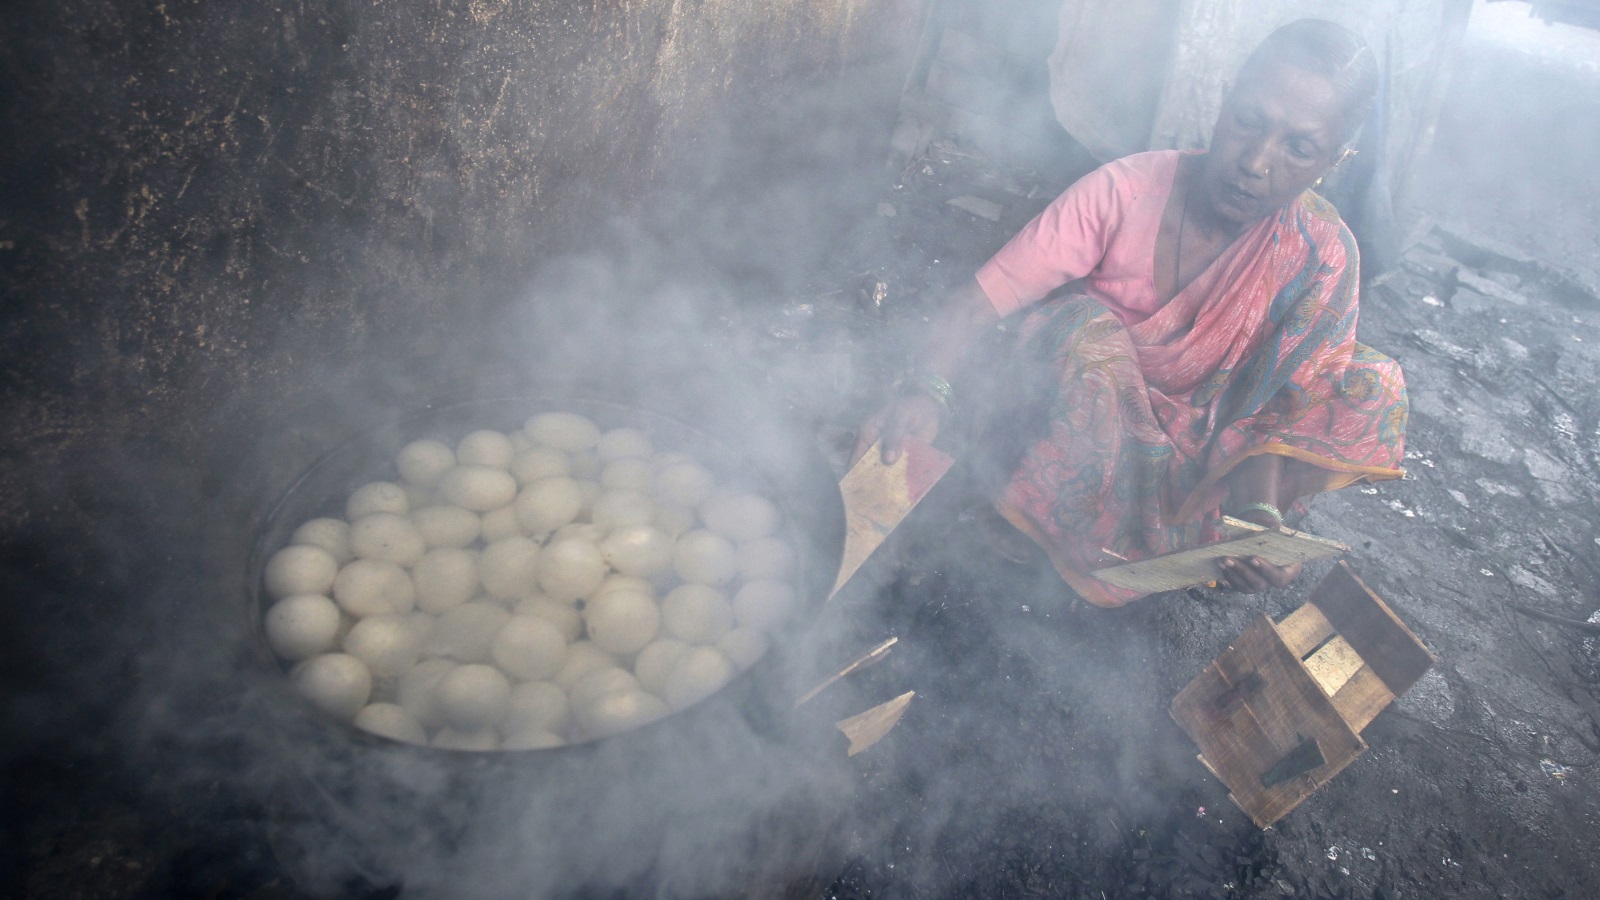 في الهند لا يزال 75% من سكان الريف يعتمدون على الروث لأغراض الطهي، وذلك رغم دفع الحكومة الهندية والوكالات الدولية إلى الاستعاضة عنها بغاز البترول المسال